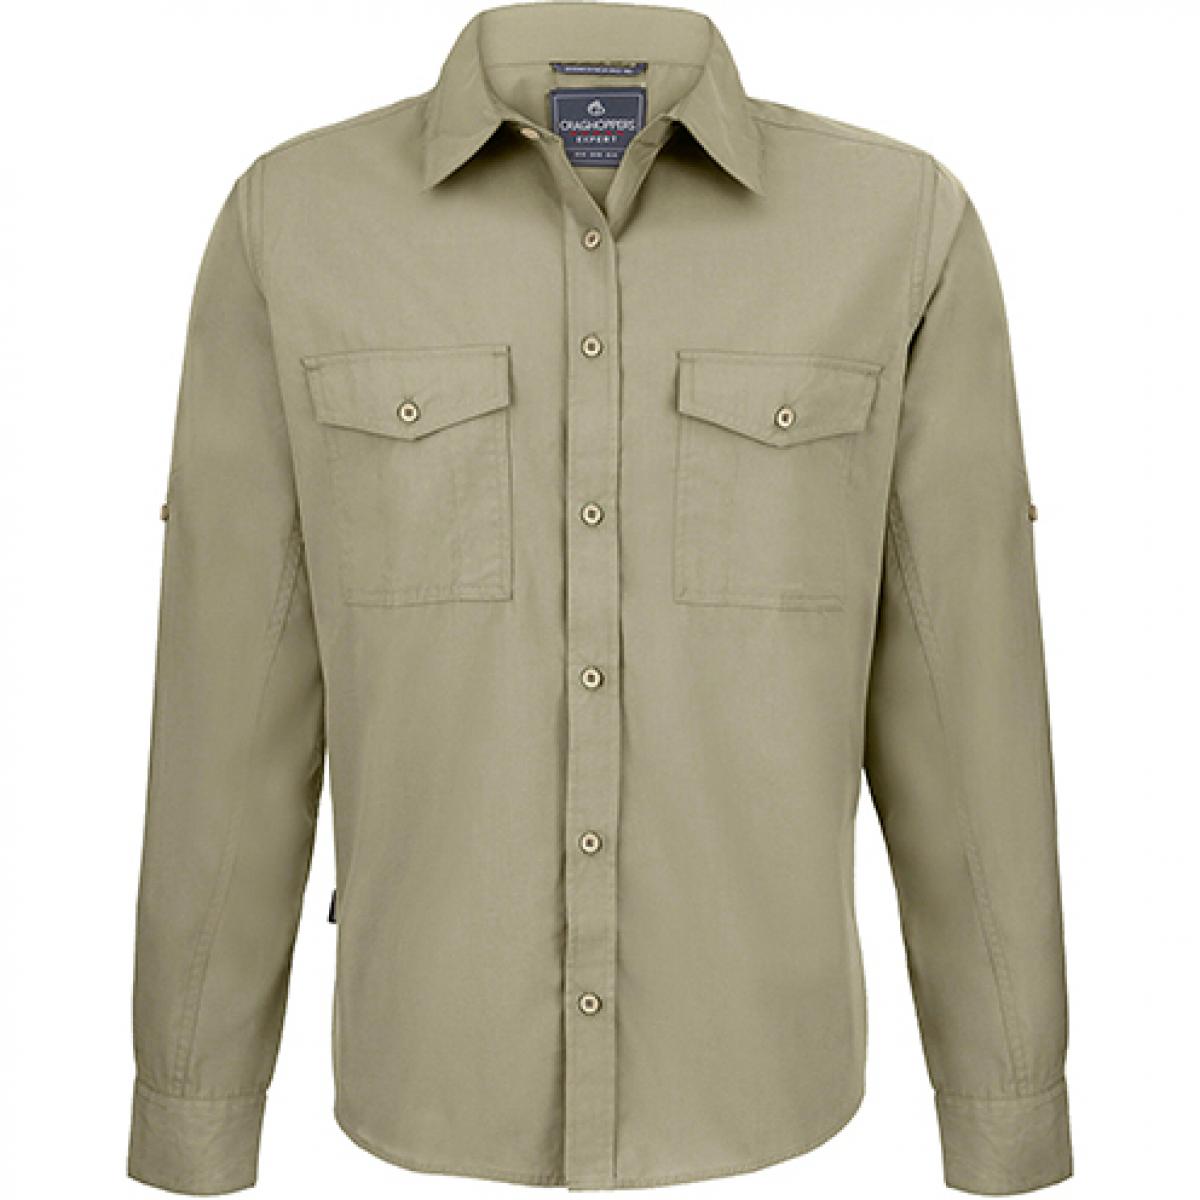 Hersteller: Craghoppers Expert Herstellernummer: CES001 Artikelbezeichnung: Expert Kiwi Long Sleeved Shirt Farbe: Pebble